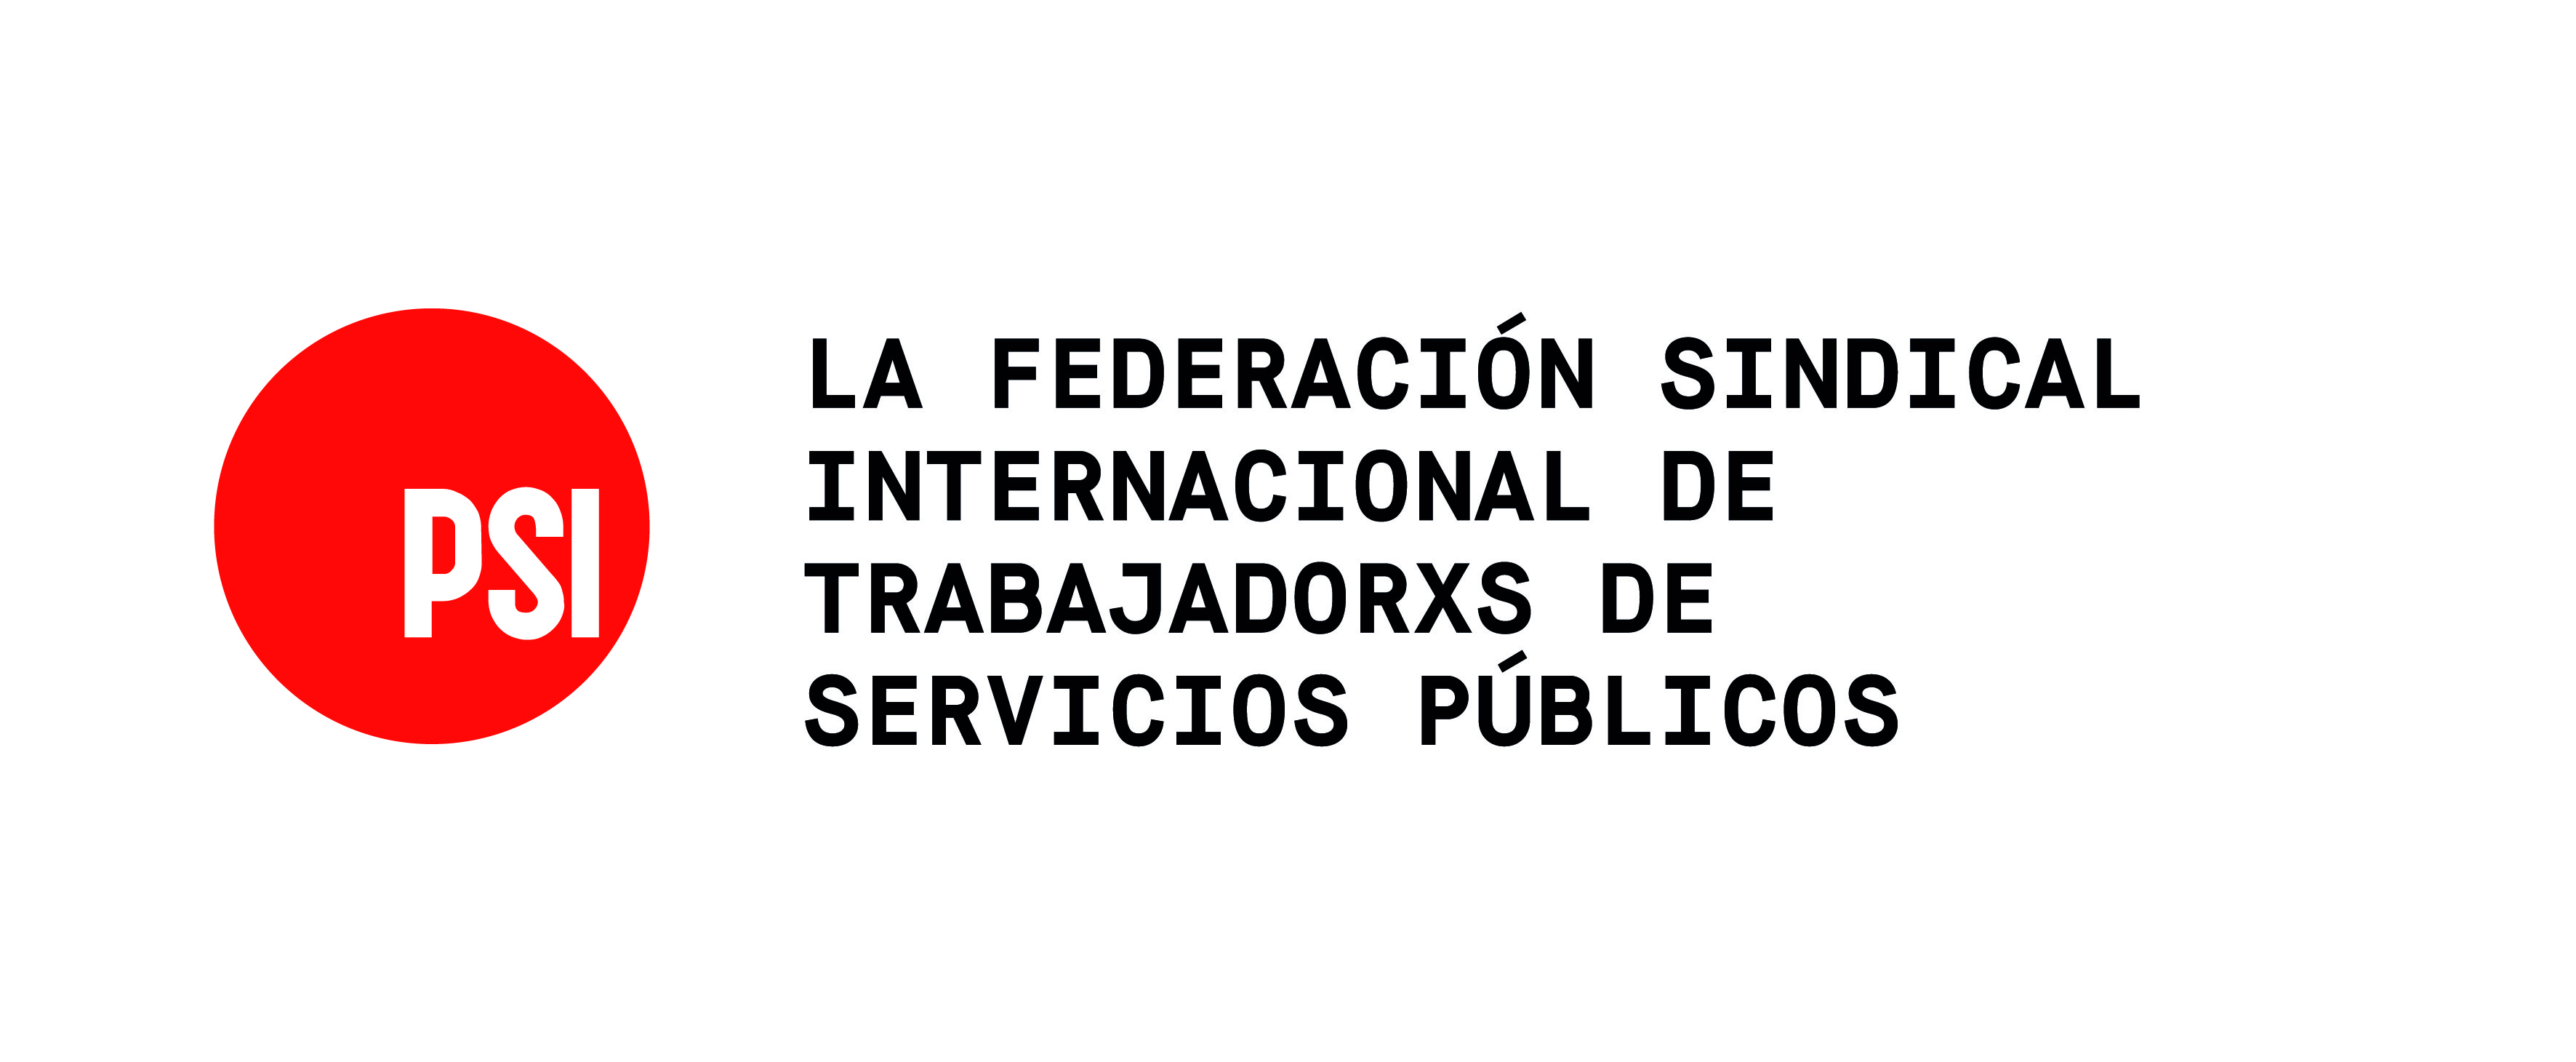 La Internacional de Servicios Públicos (ISP)